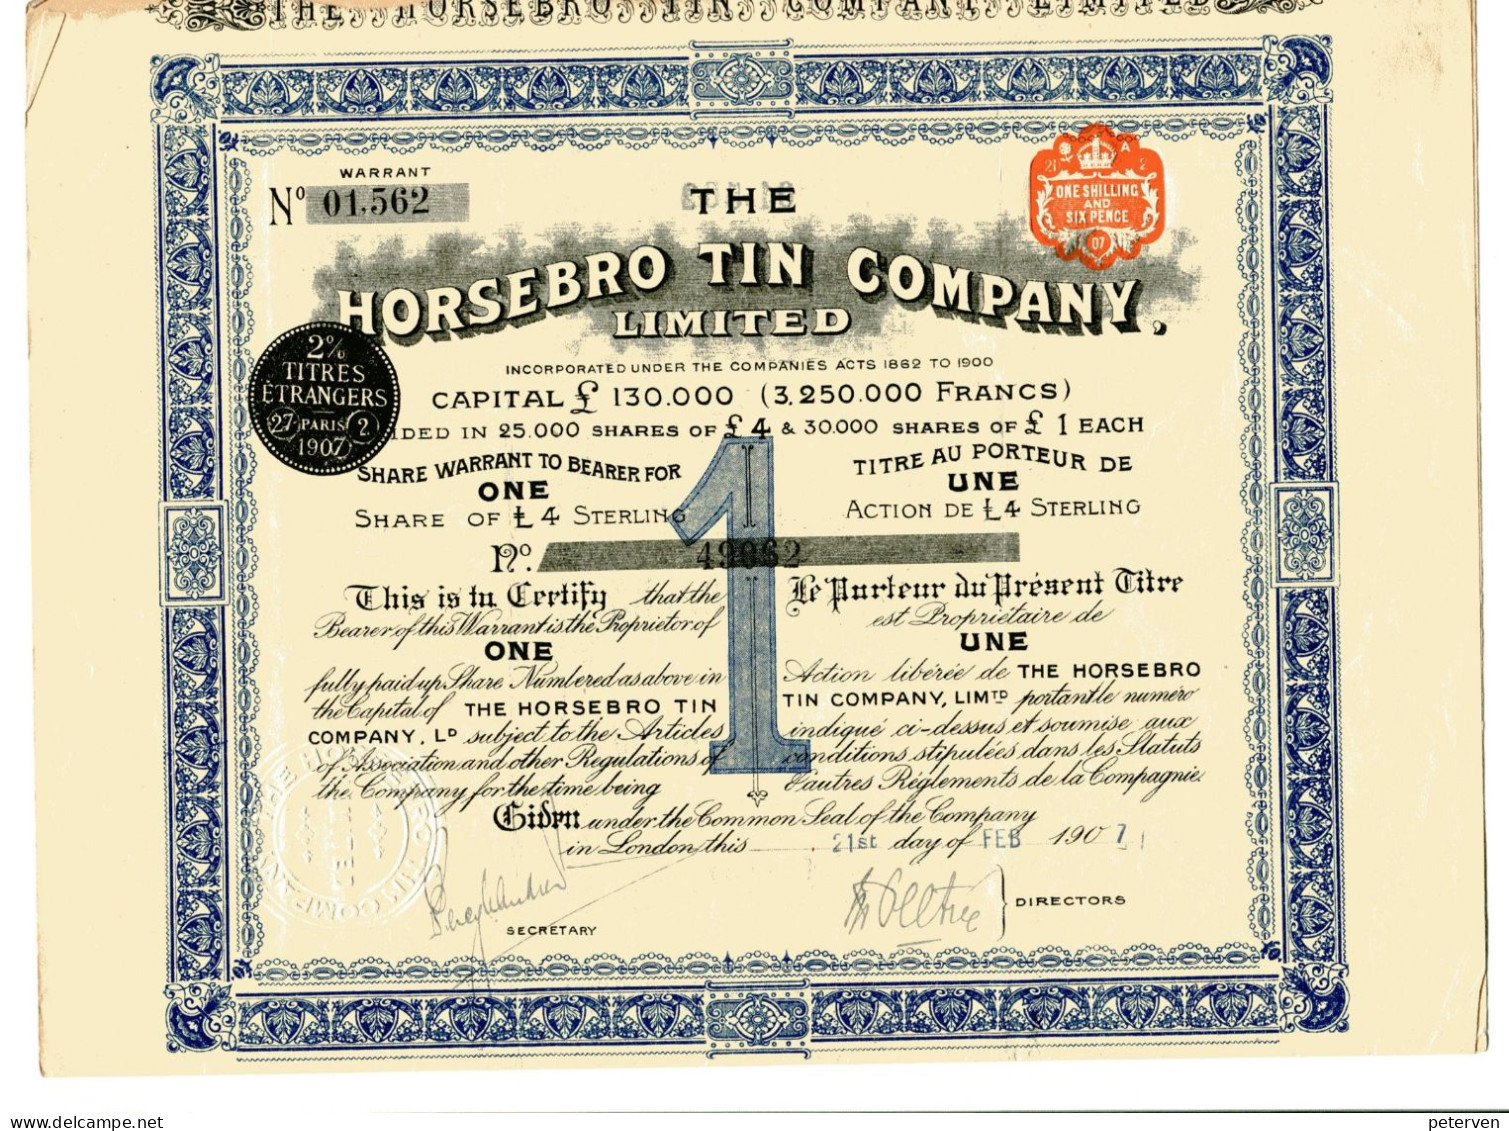 The HORSEBRO TIN COMPANY, Limited - Miniere